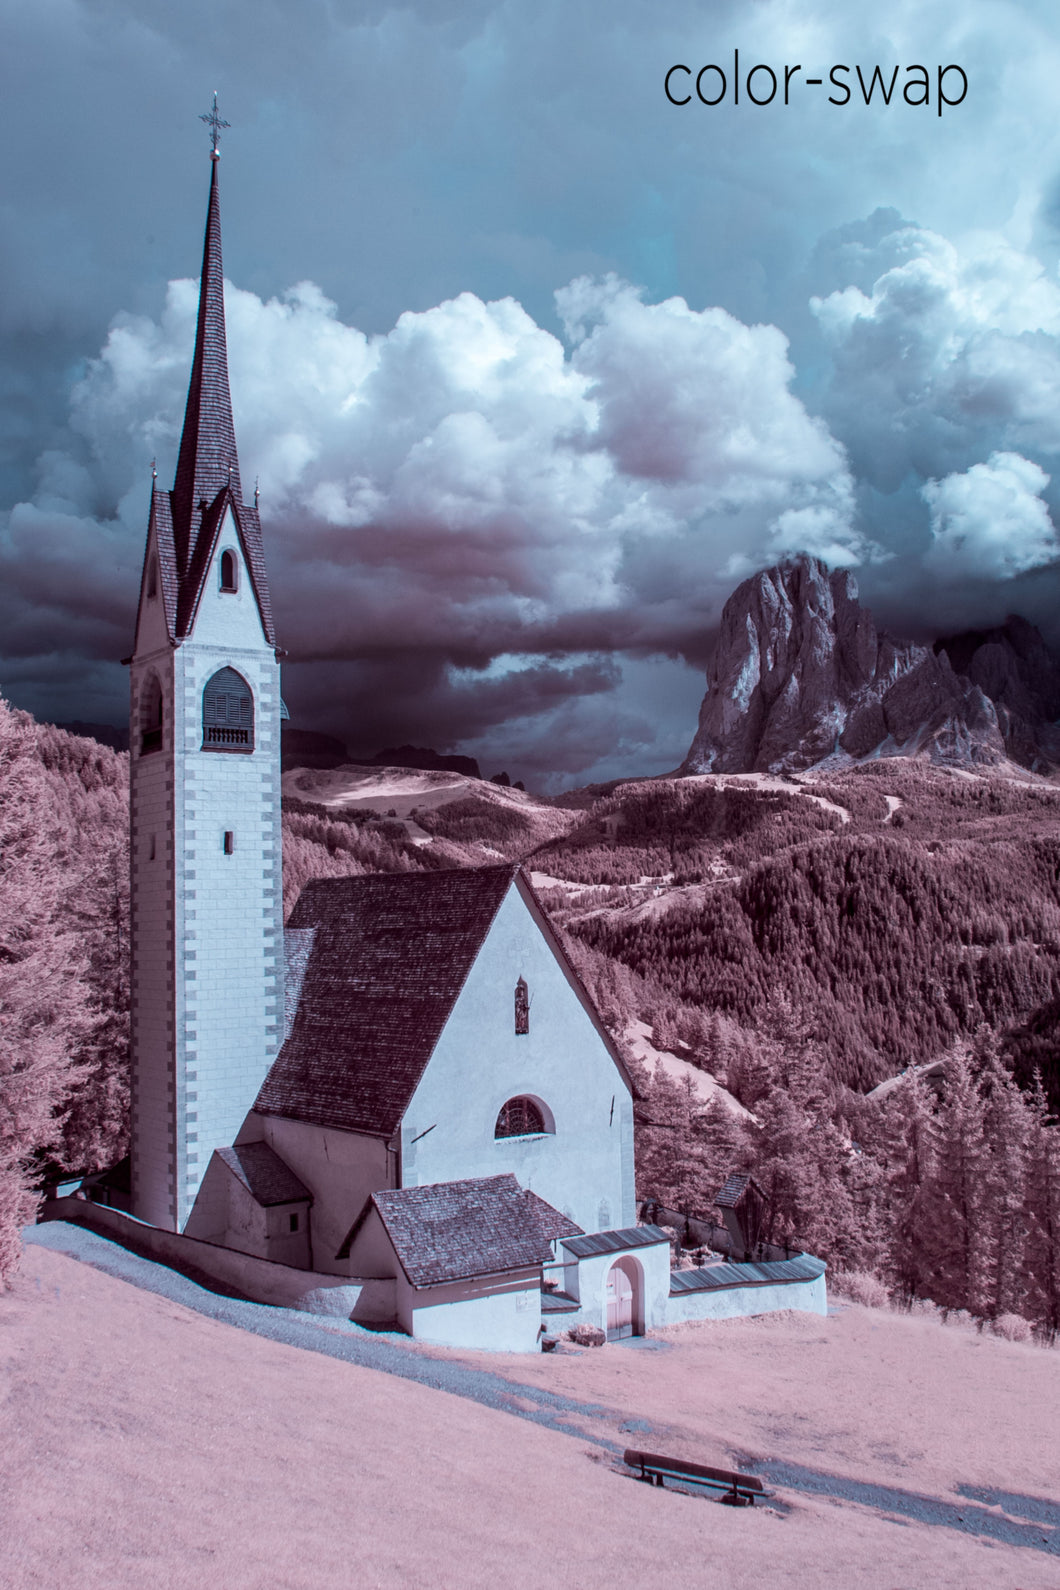 Chiesa di San Giacomo photo, infrared church photography, aerial drone infrared photo, European church landscape, Italian church in mountains photo